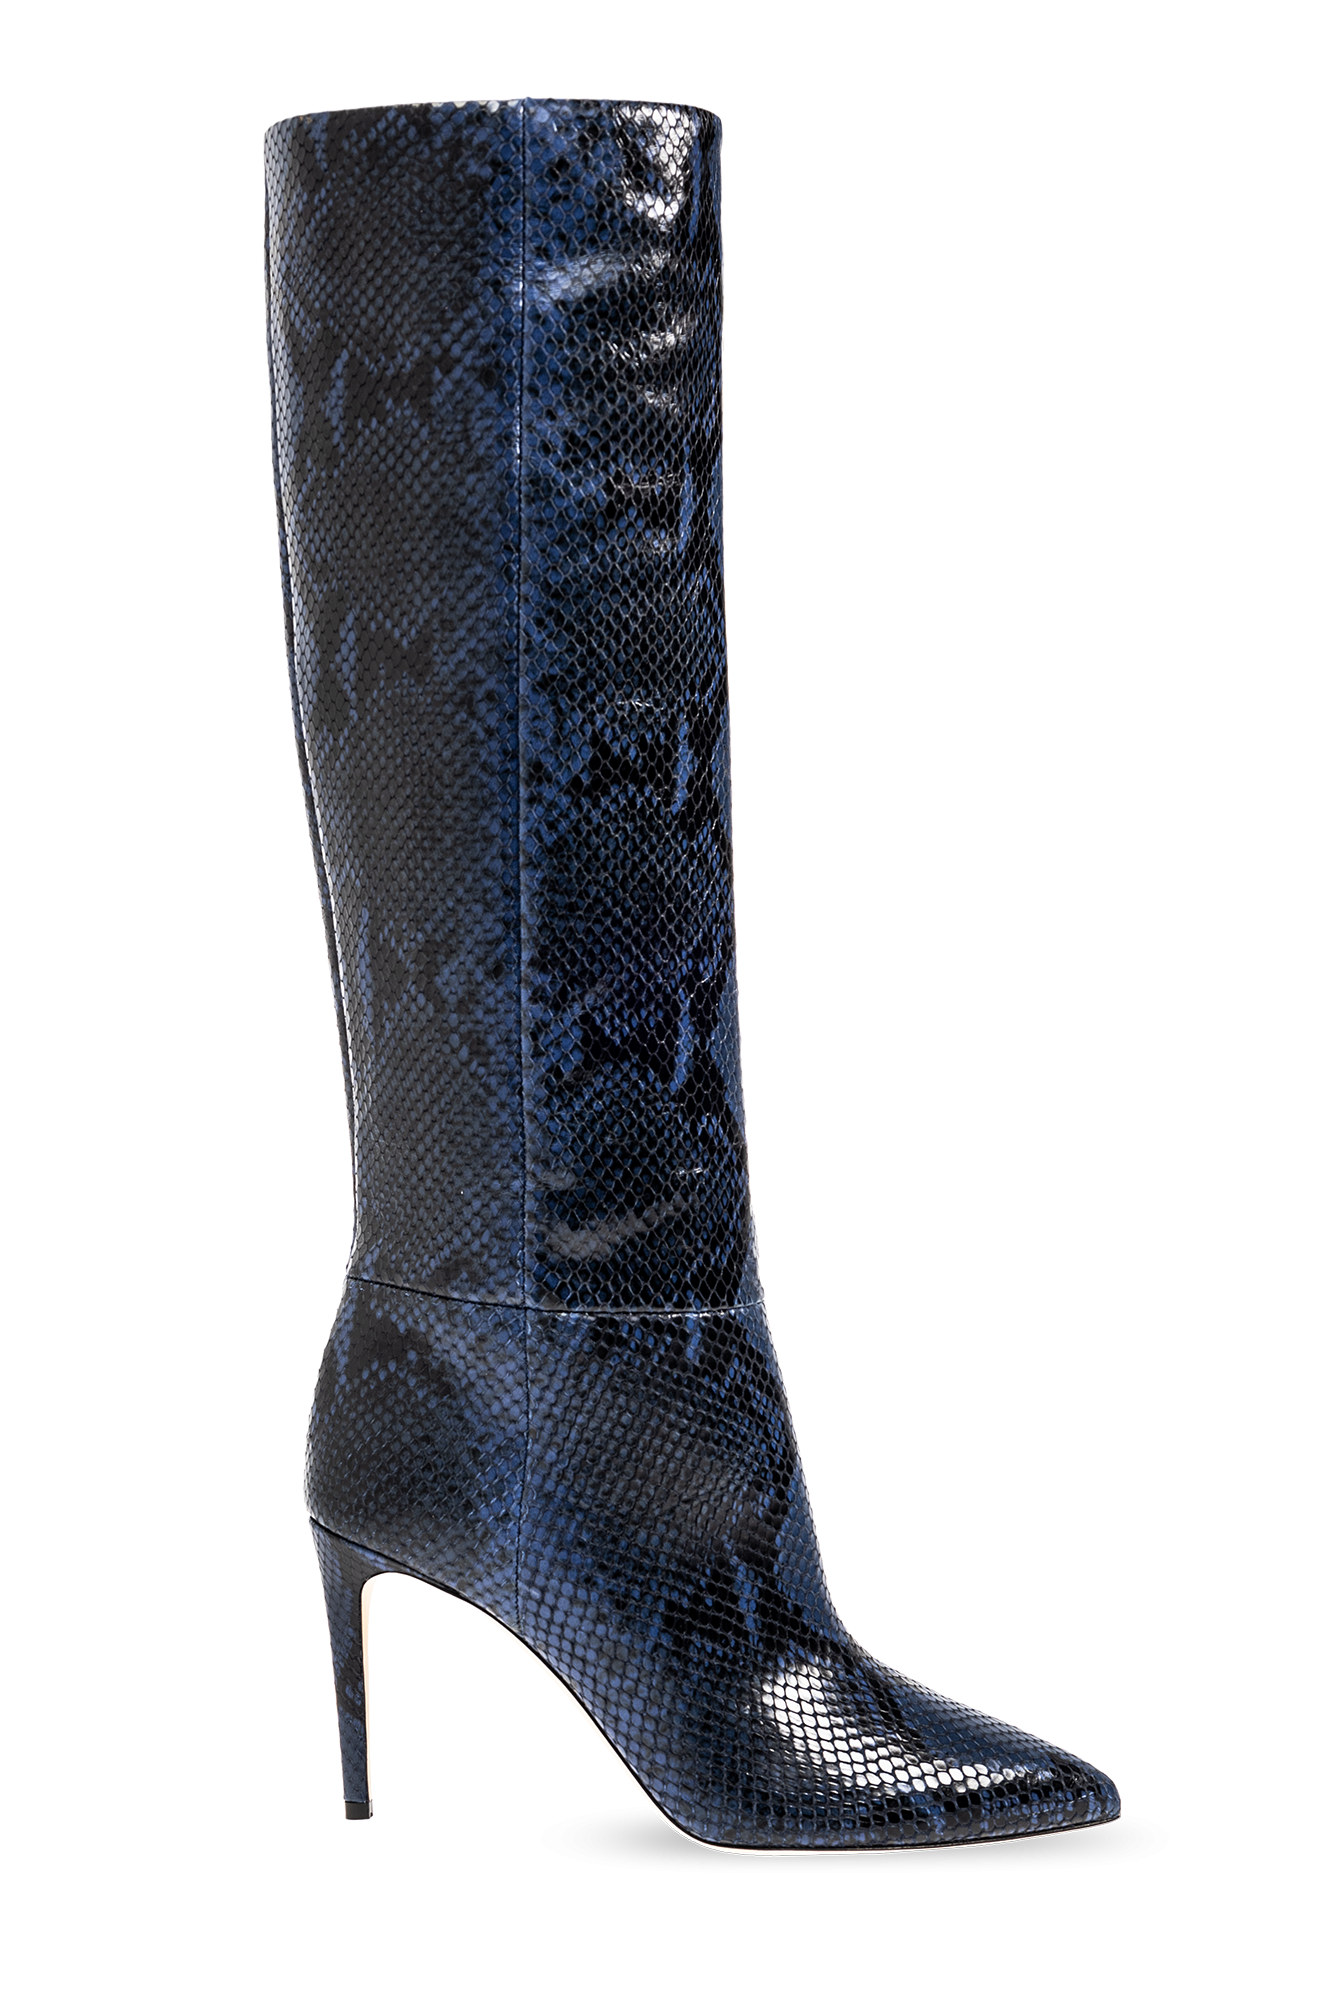 Paris Texas Heeled boots with animal motif